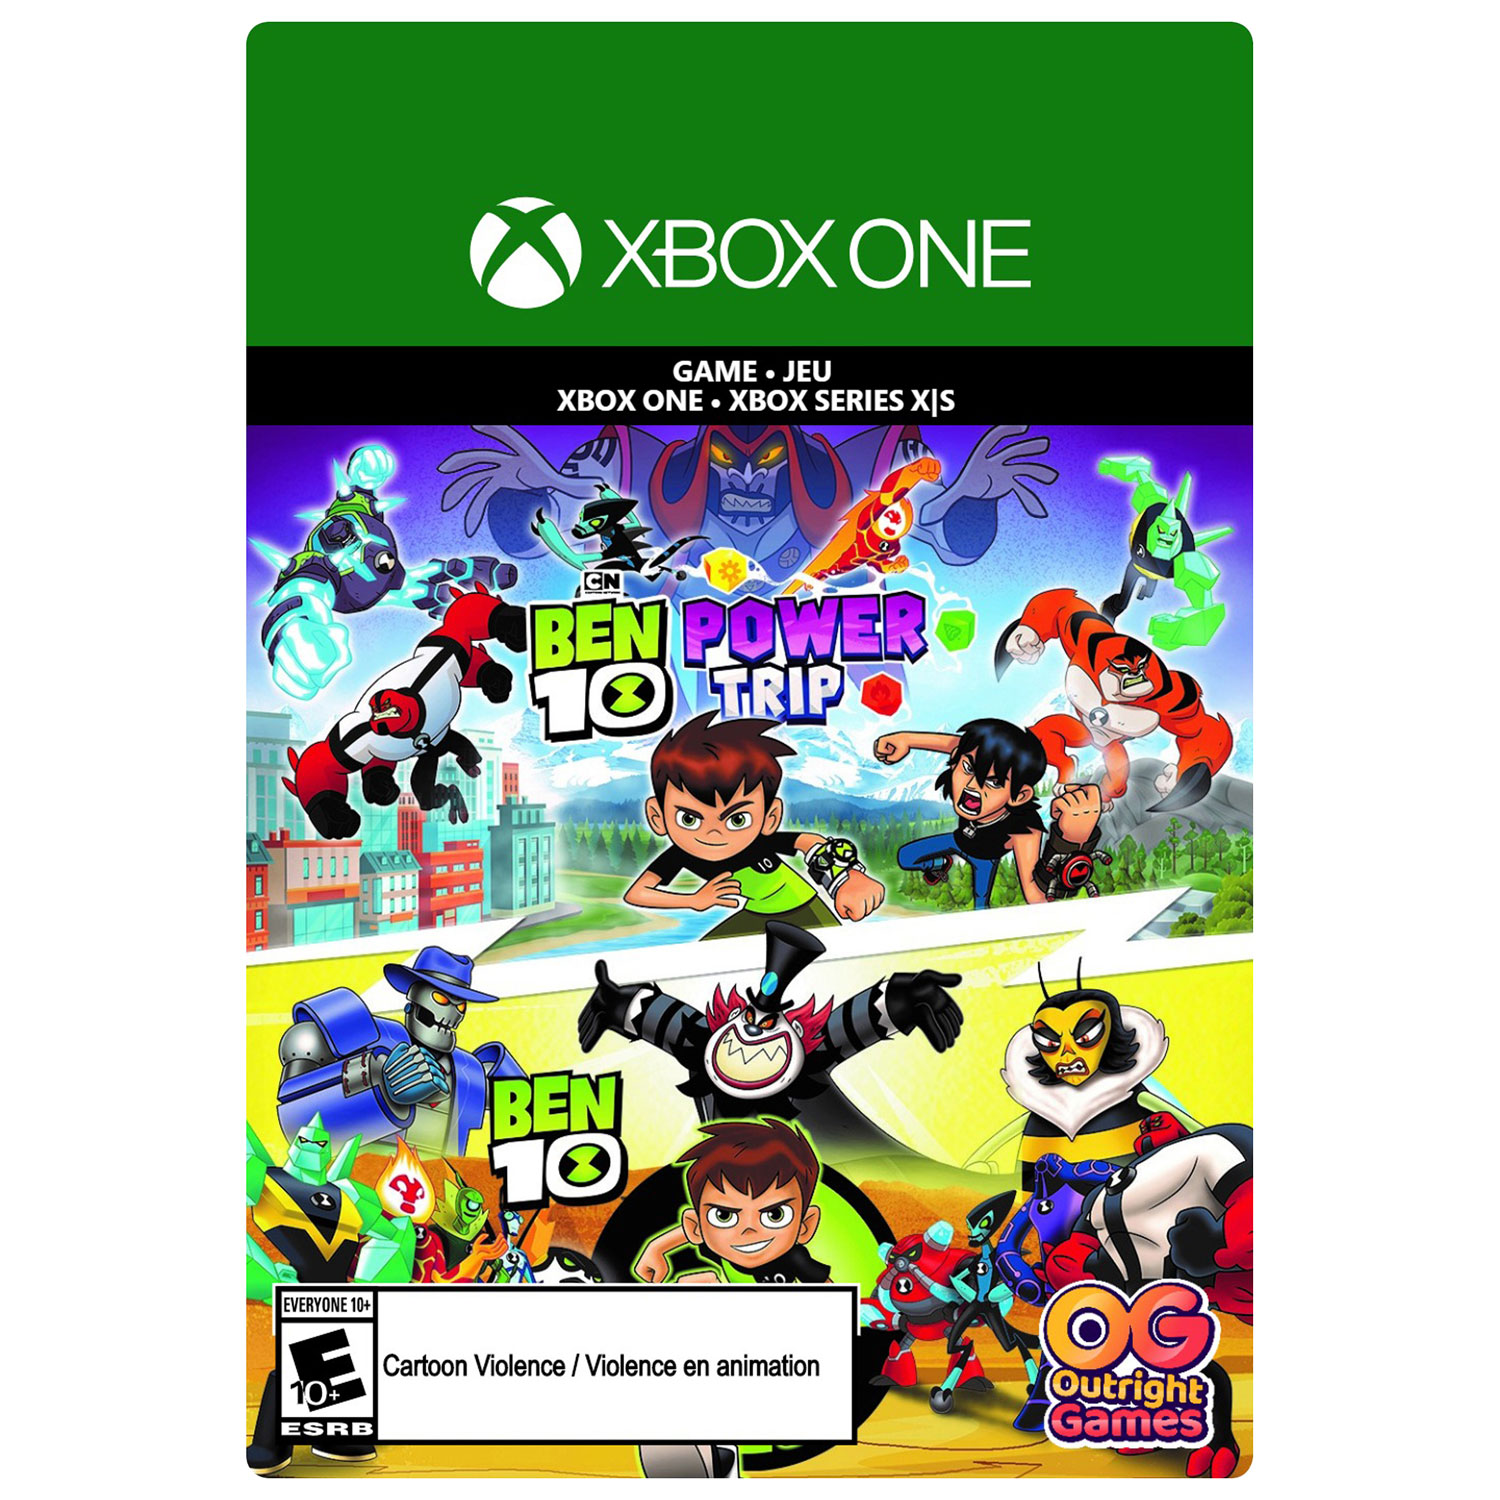 Ben 10 / Ben 10: Power Trip (Xbox One / Xbox Series X|S) - Digital Download  | Best Buy Canada